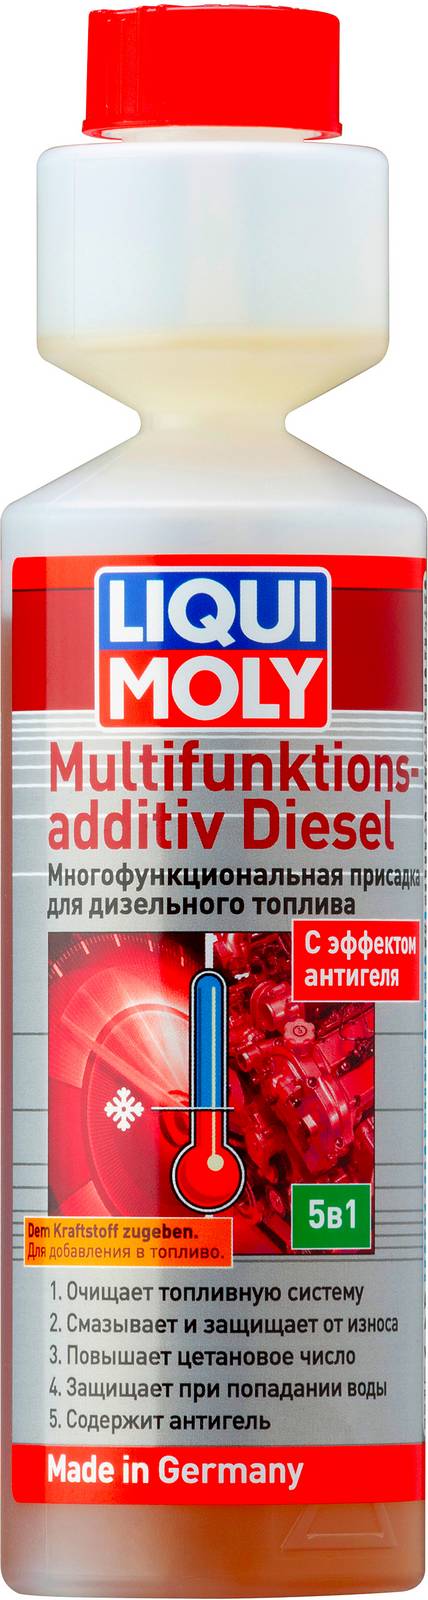 Присадки / Автохимия 39024 Liqui Moly Многофункциональная присадка для дизельного топлива Multifunktionsadditiv Diesel 0,25л